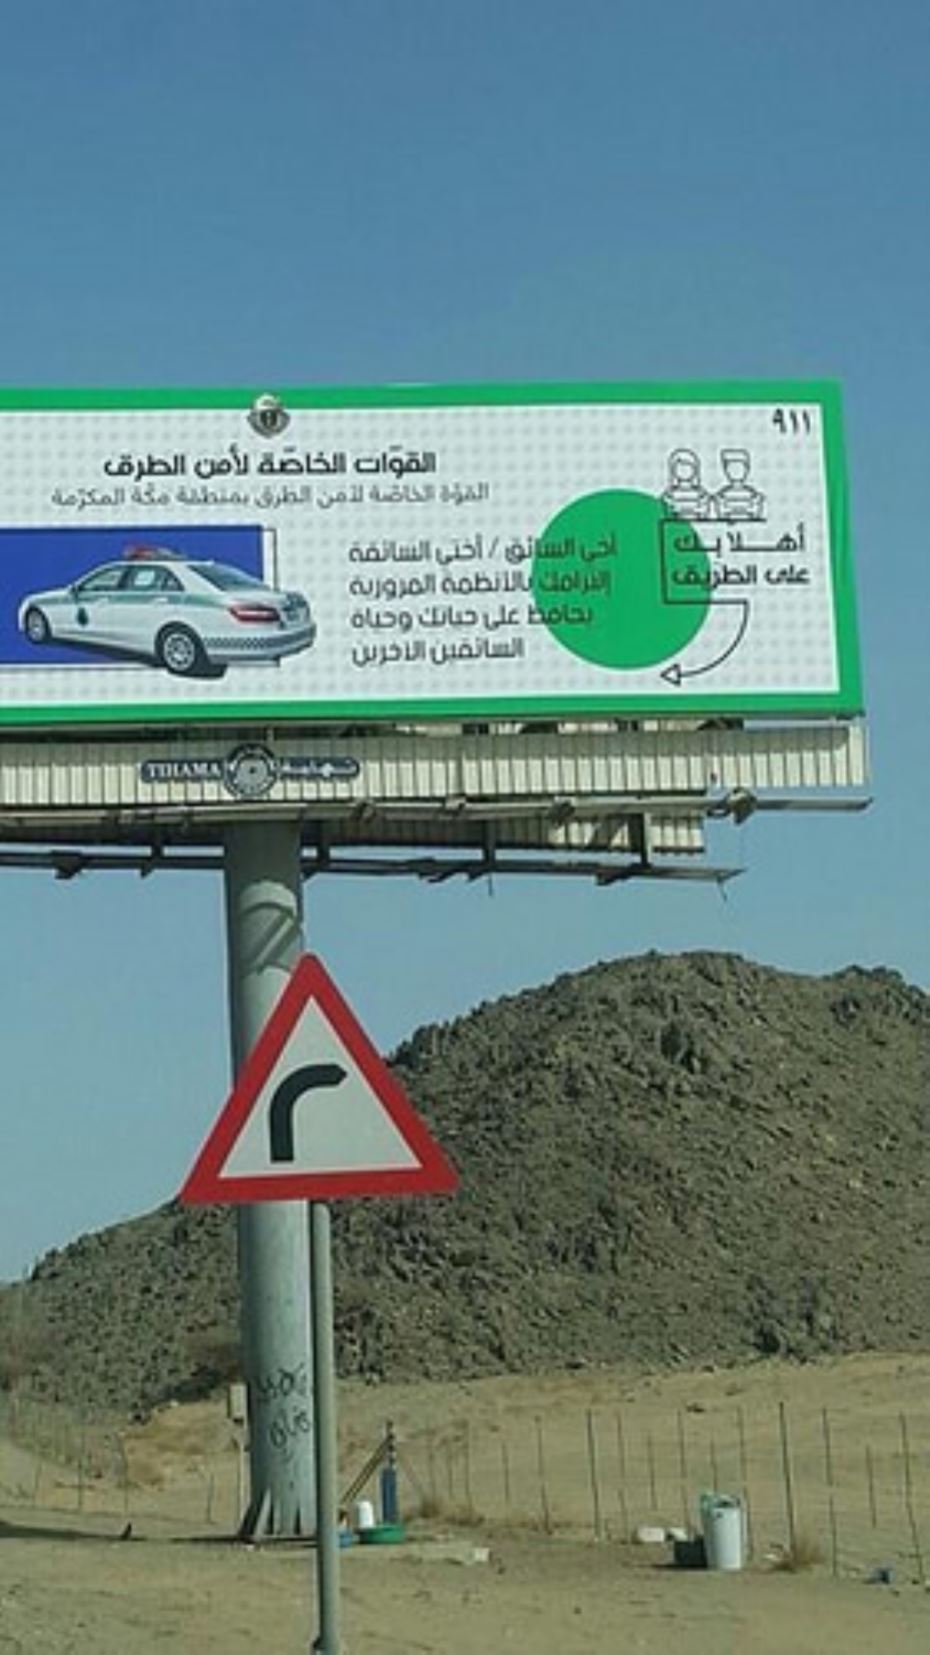 لافتات لتوخى المرأة الحذر أثناء القيادة